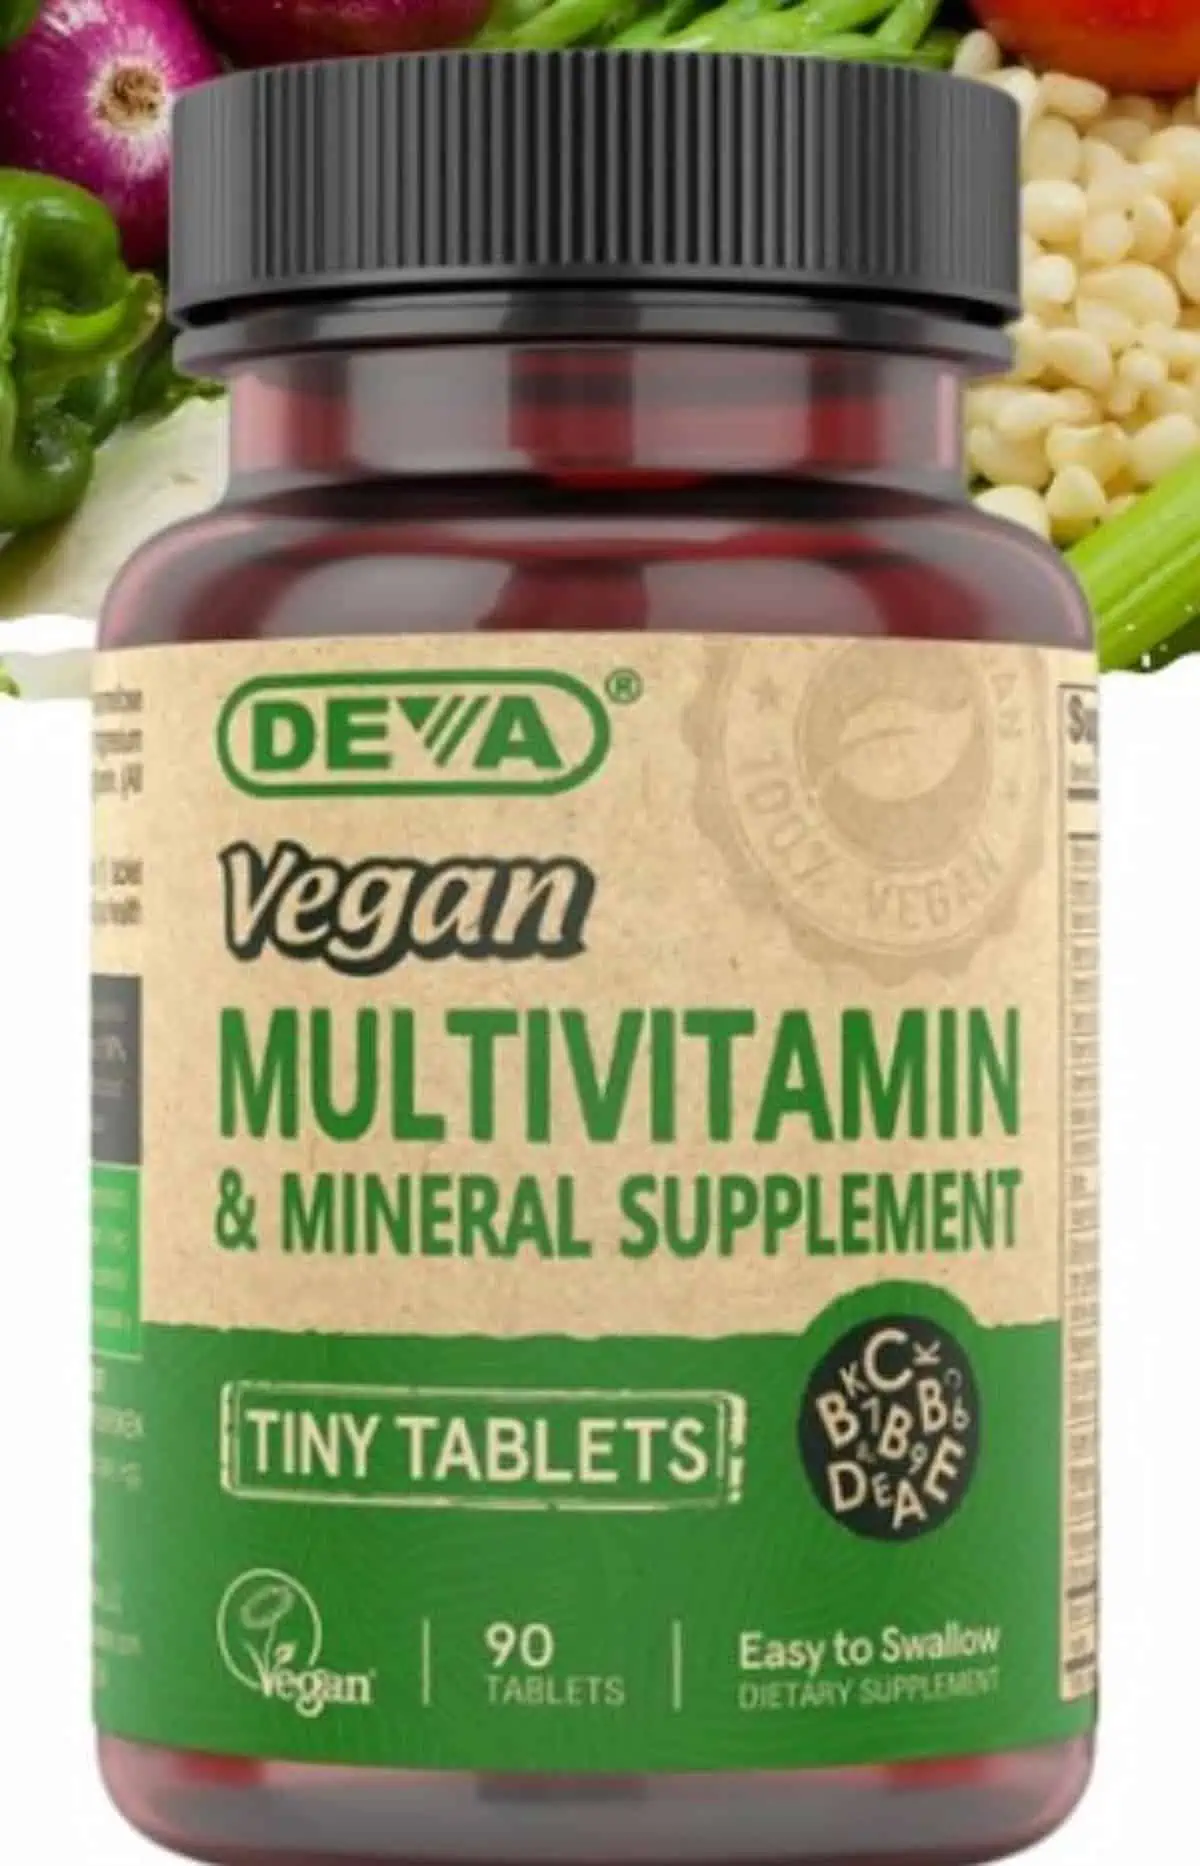 A bottle of Deva brand vegan multivitamins.